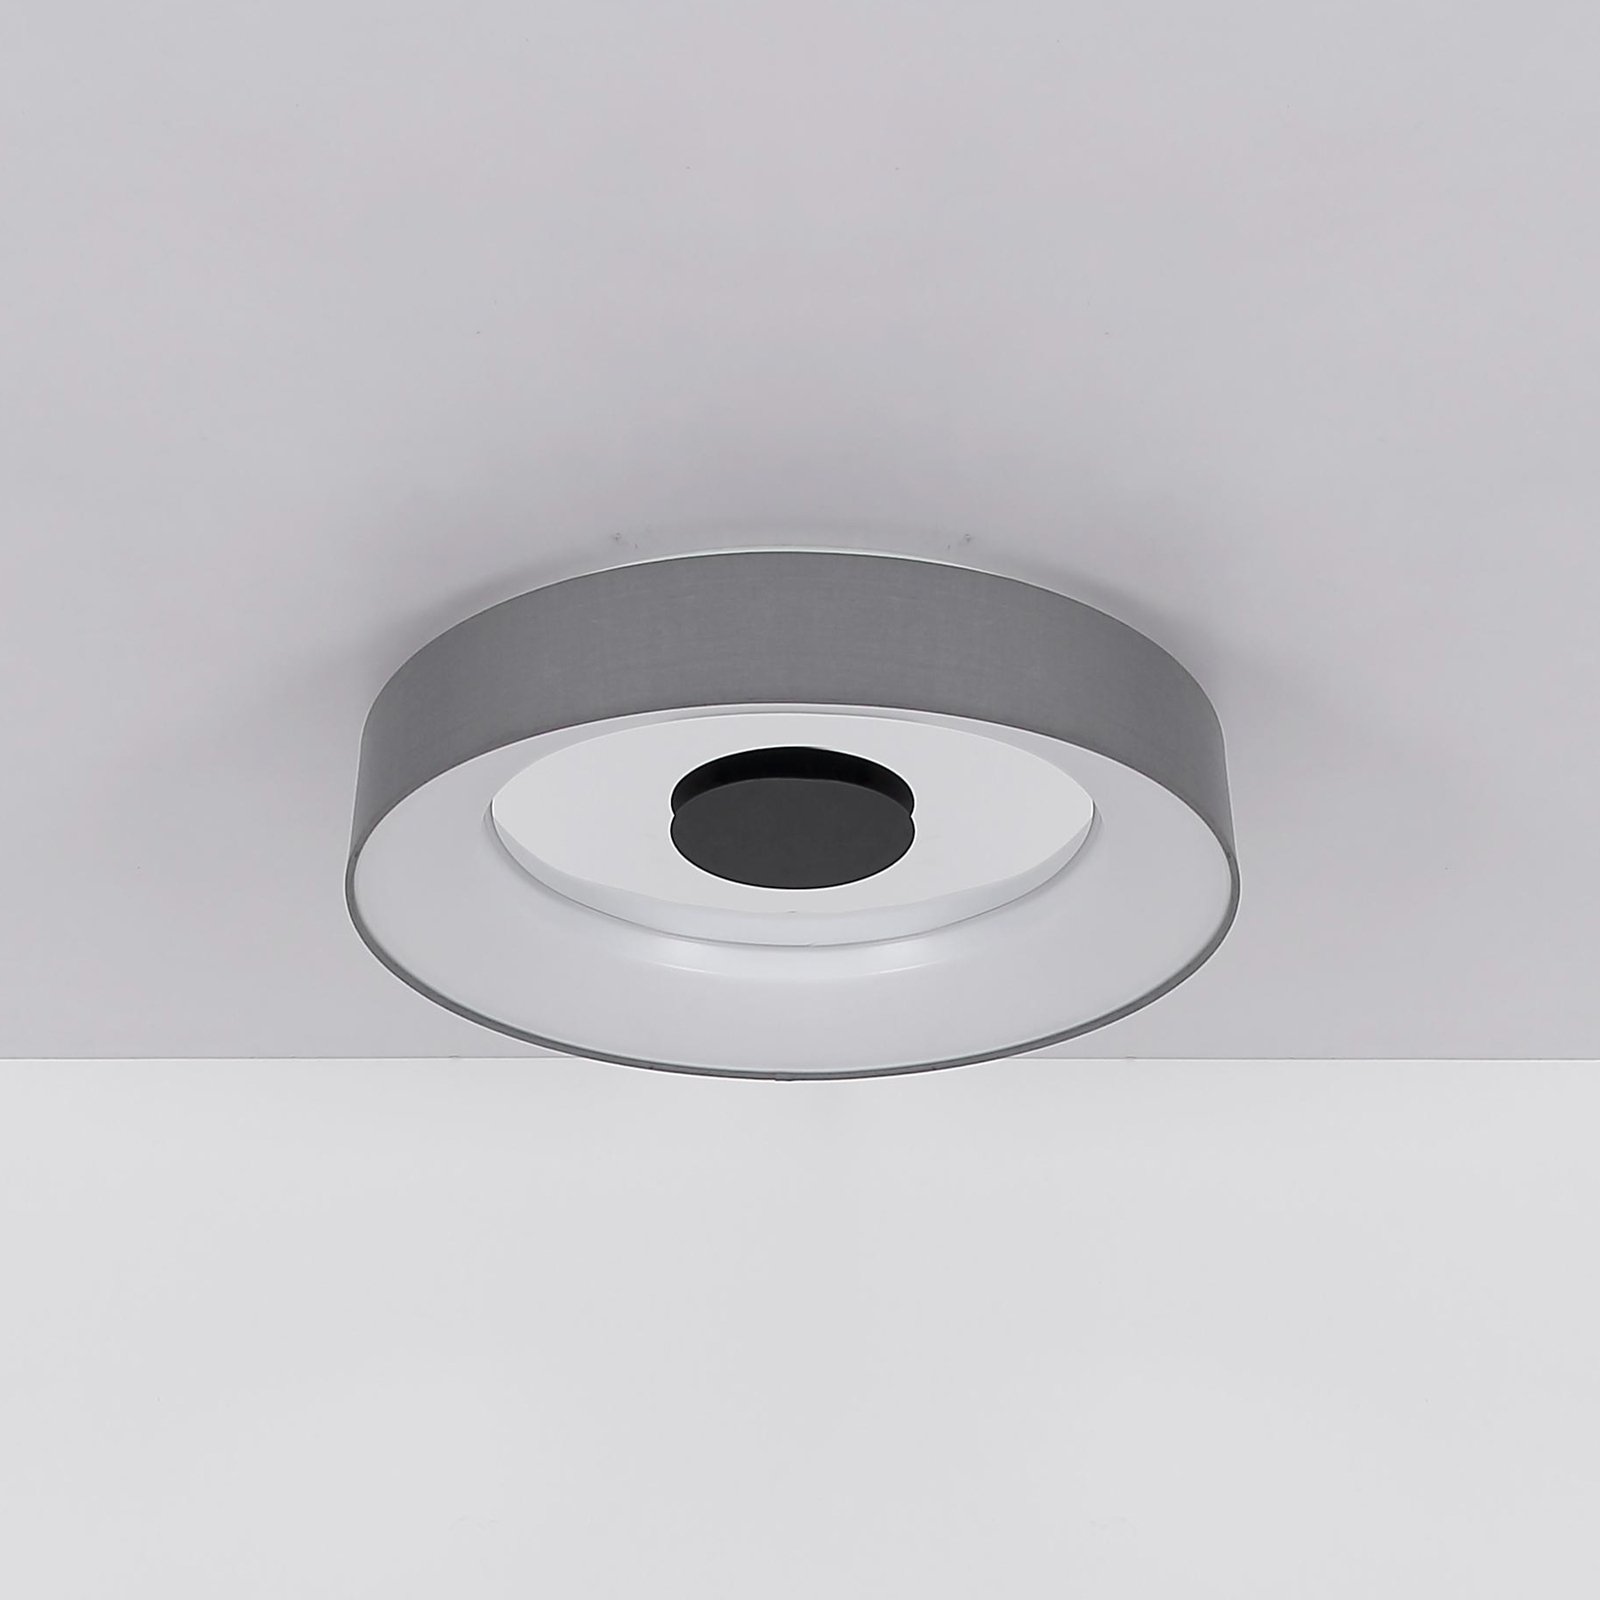 Chytré stropní svítidlo LED Terpsa, bílá/šedá, Ø 46,8 cm, tkanina